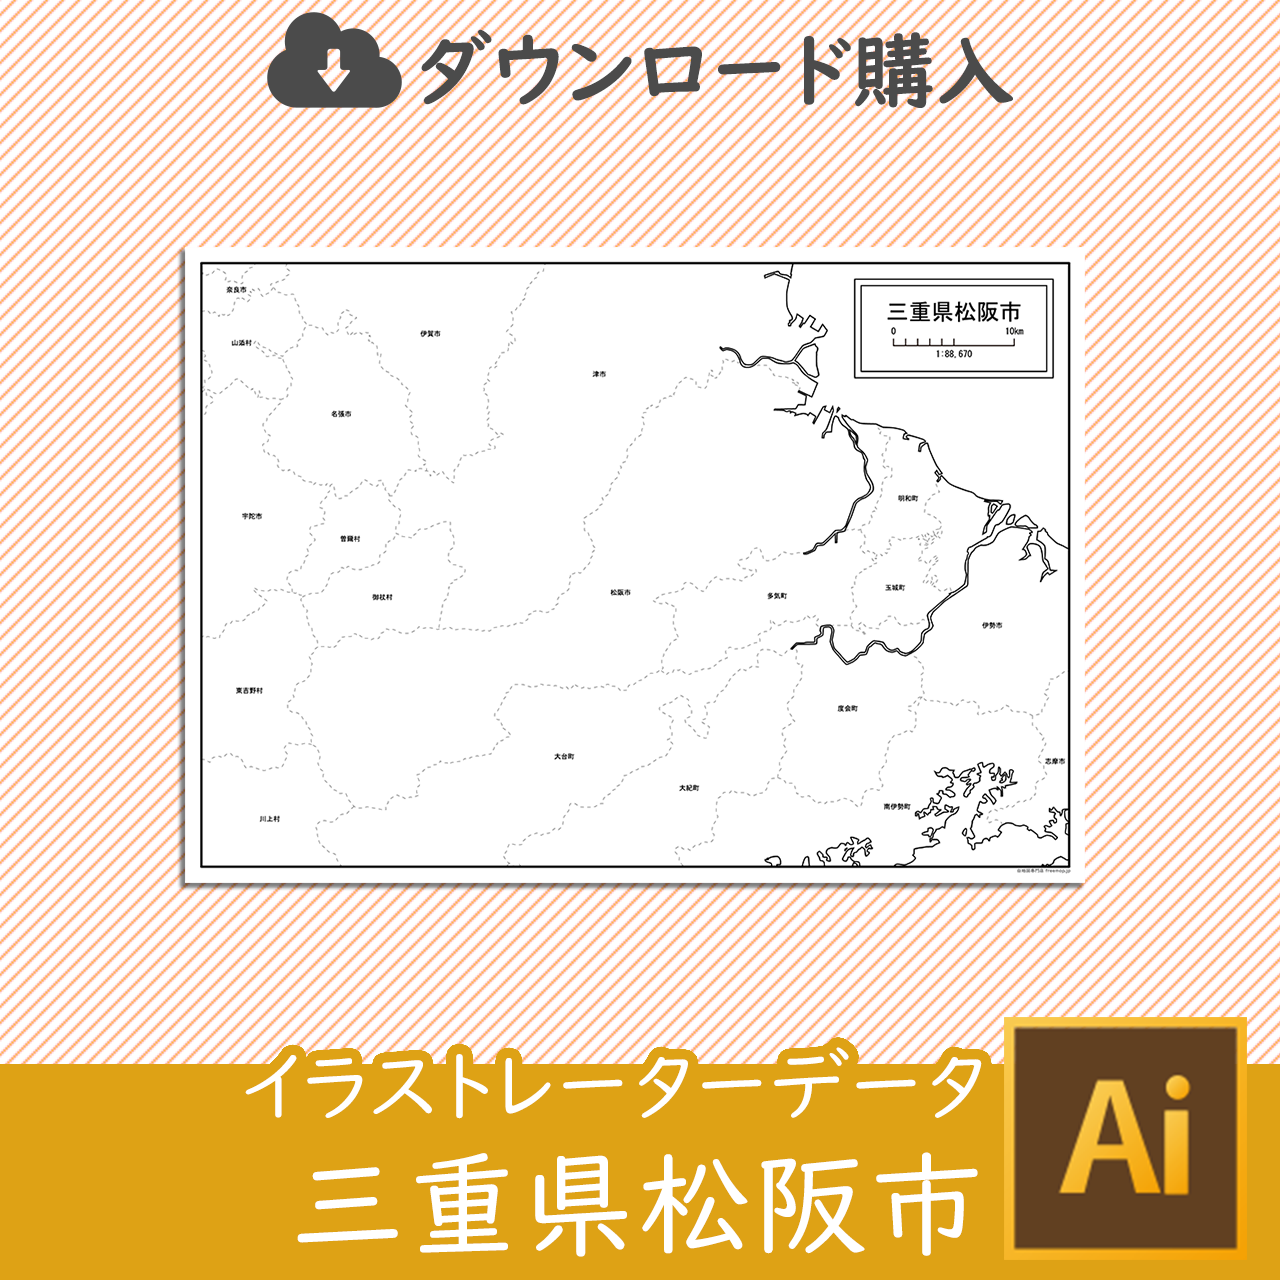 松阪市のaiデータのサムネイル画像